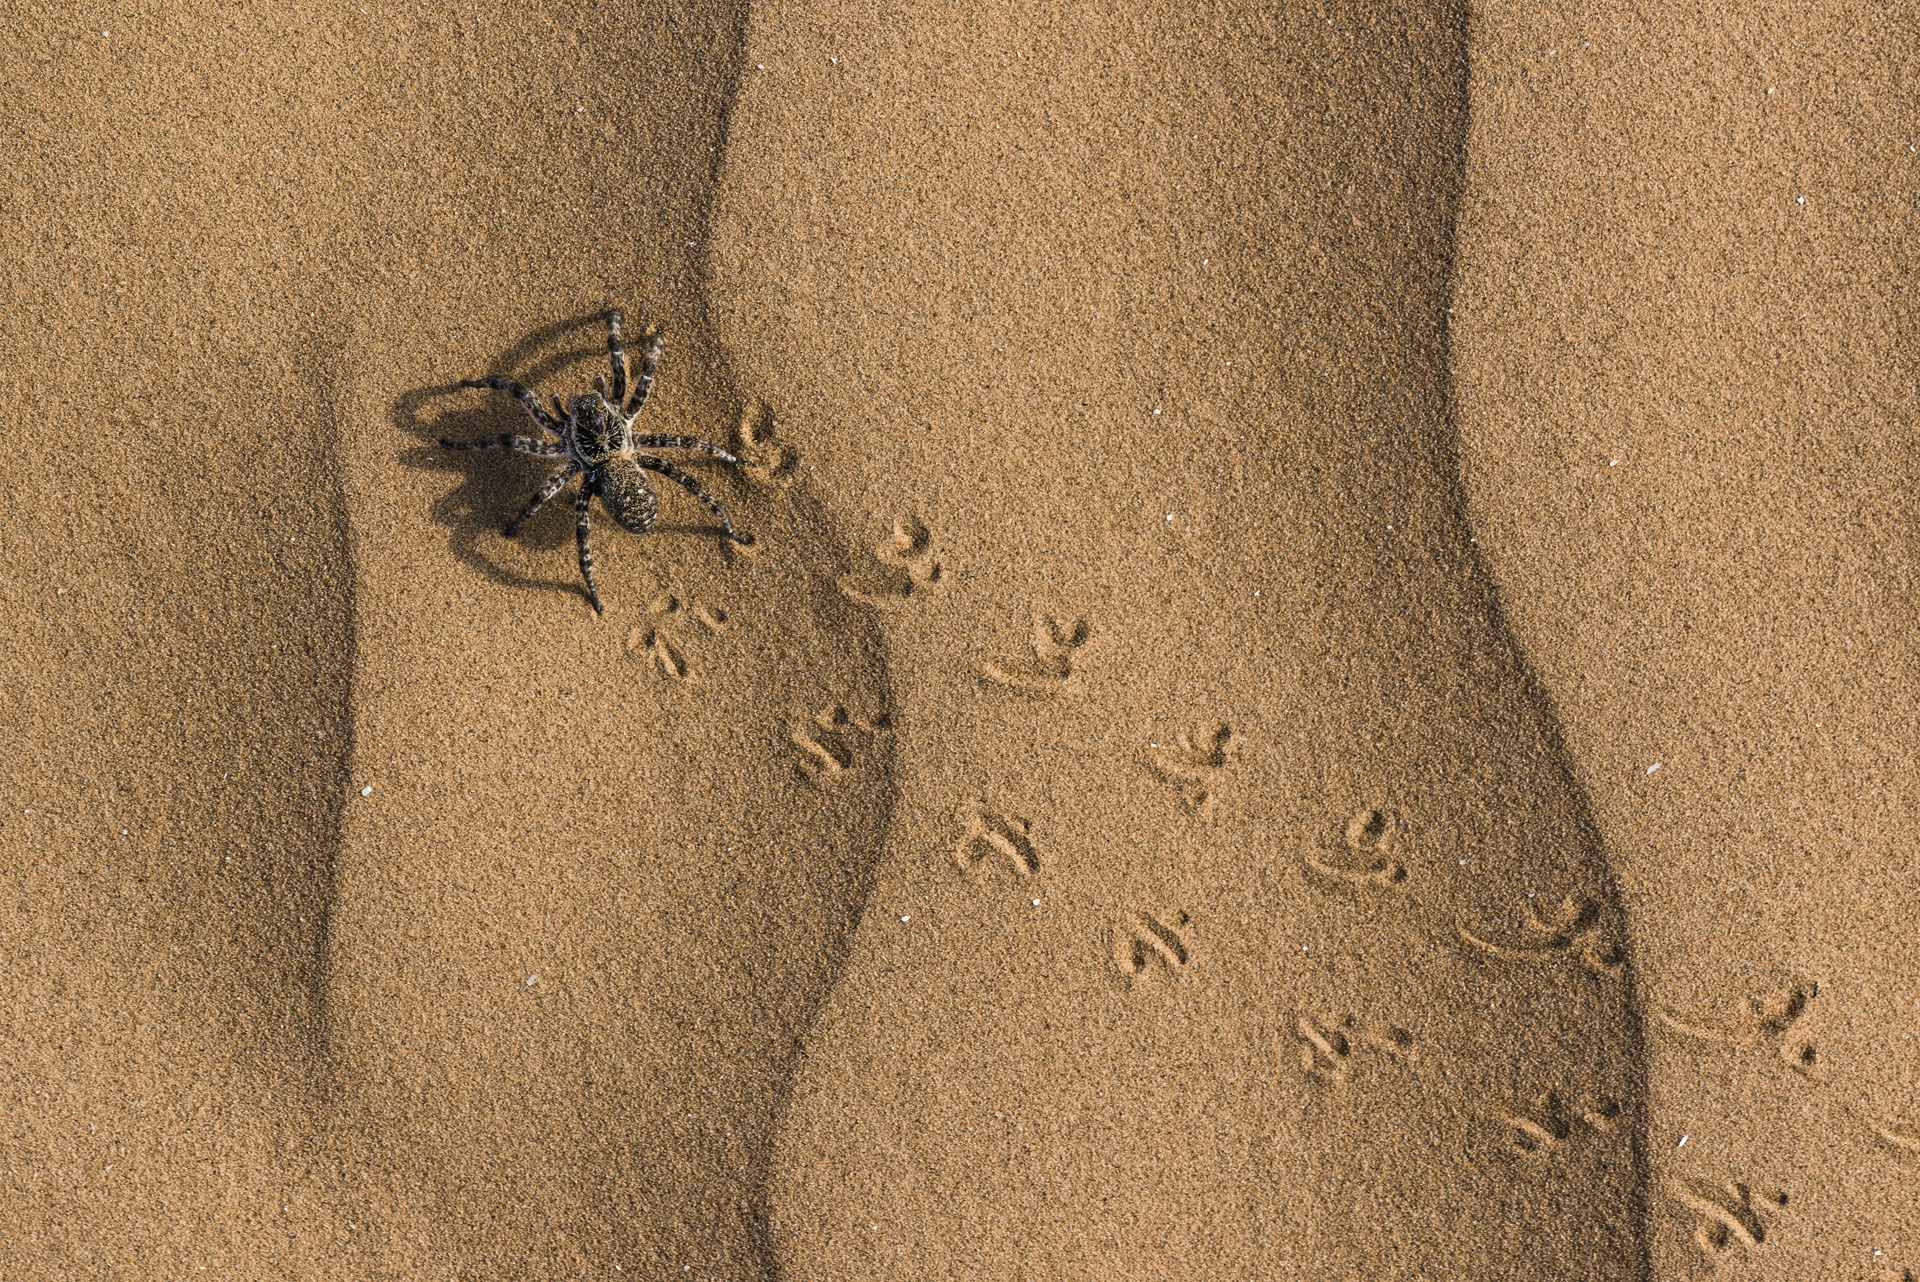 Arachnid Sand 1920x1282